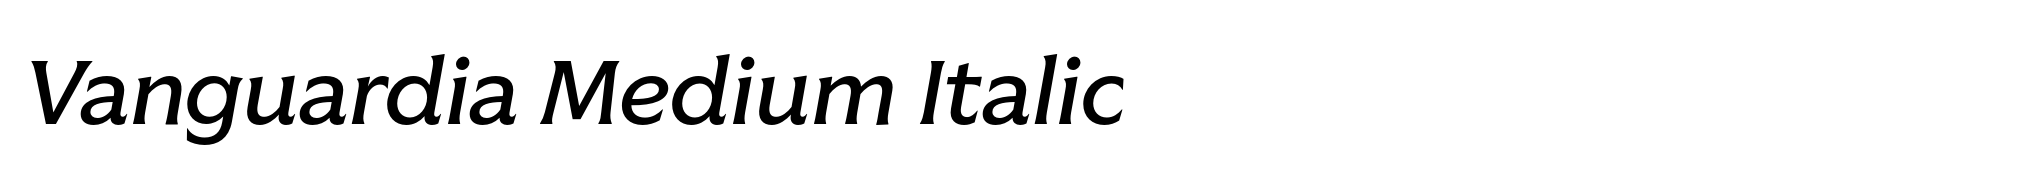 Vanguardia Medium Italic image